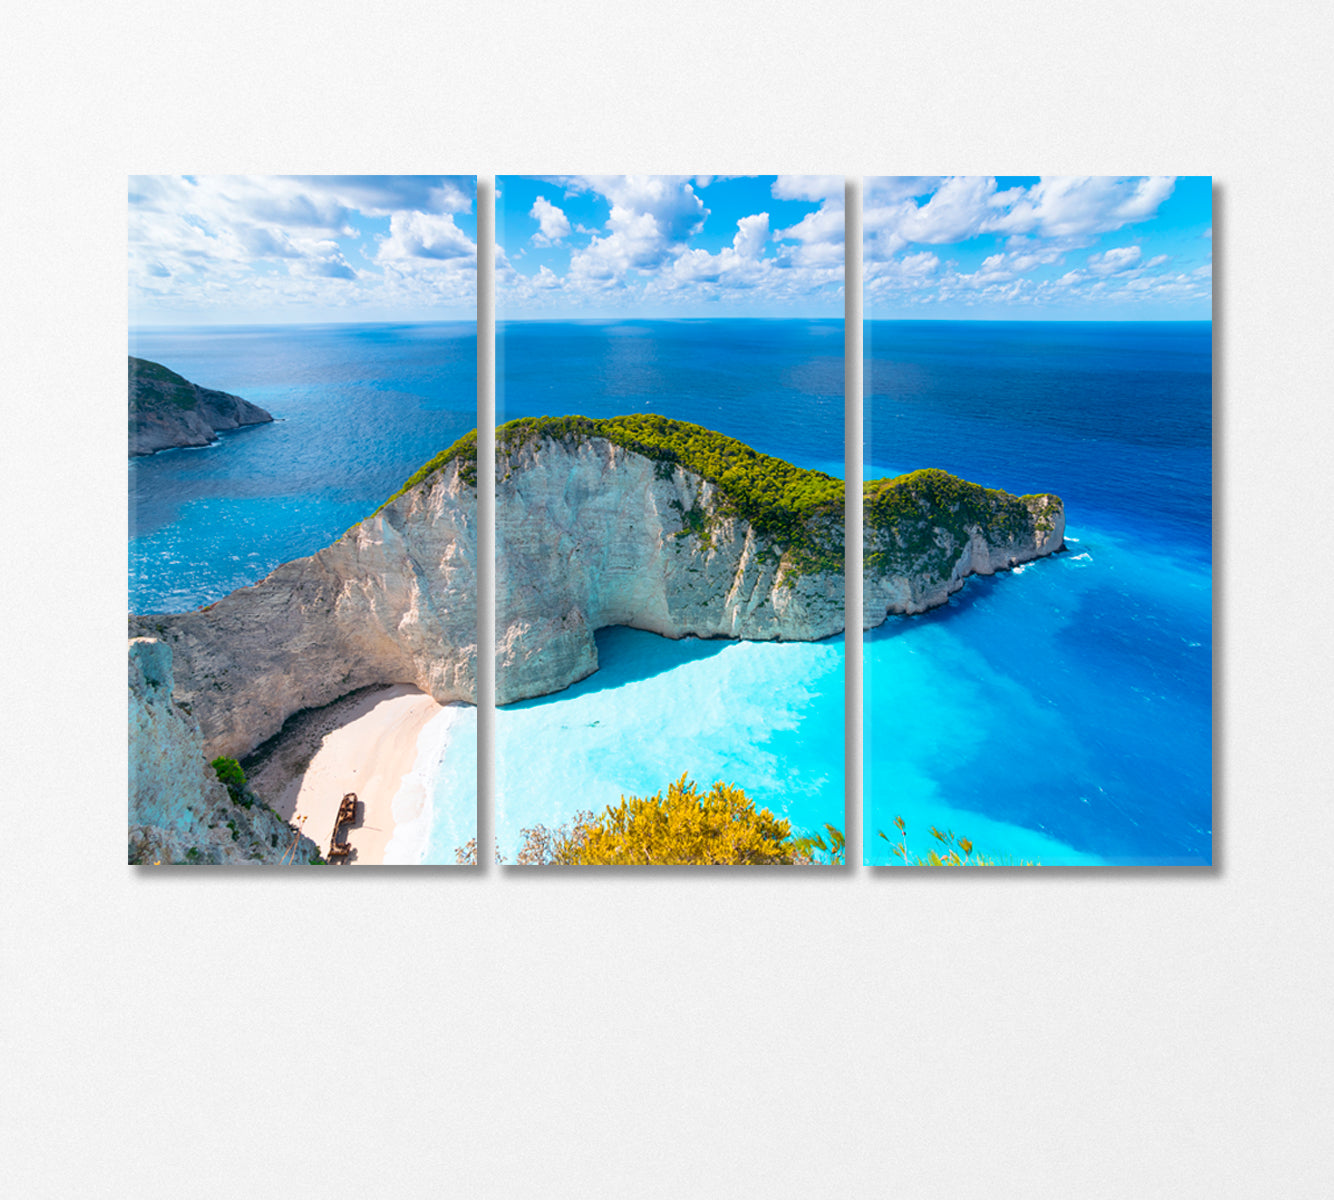 Zakynthos Island Greece Canvas Print-Canvas Print-CetArt-3 Panels-36x24 inches-CetArt